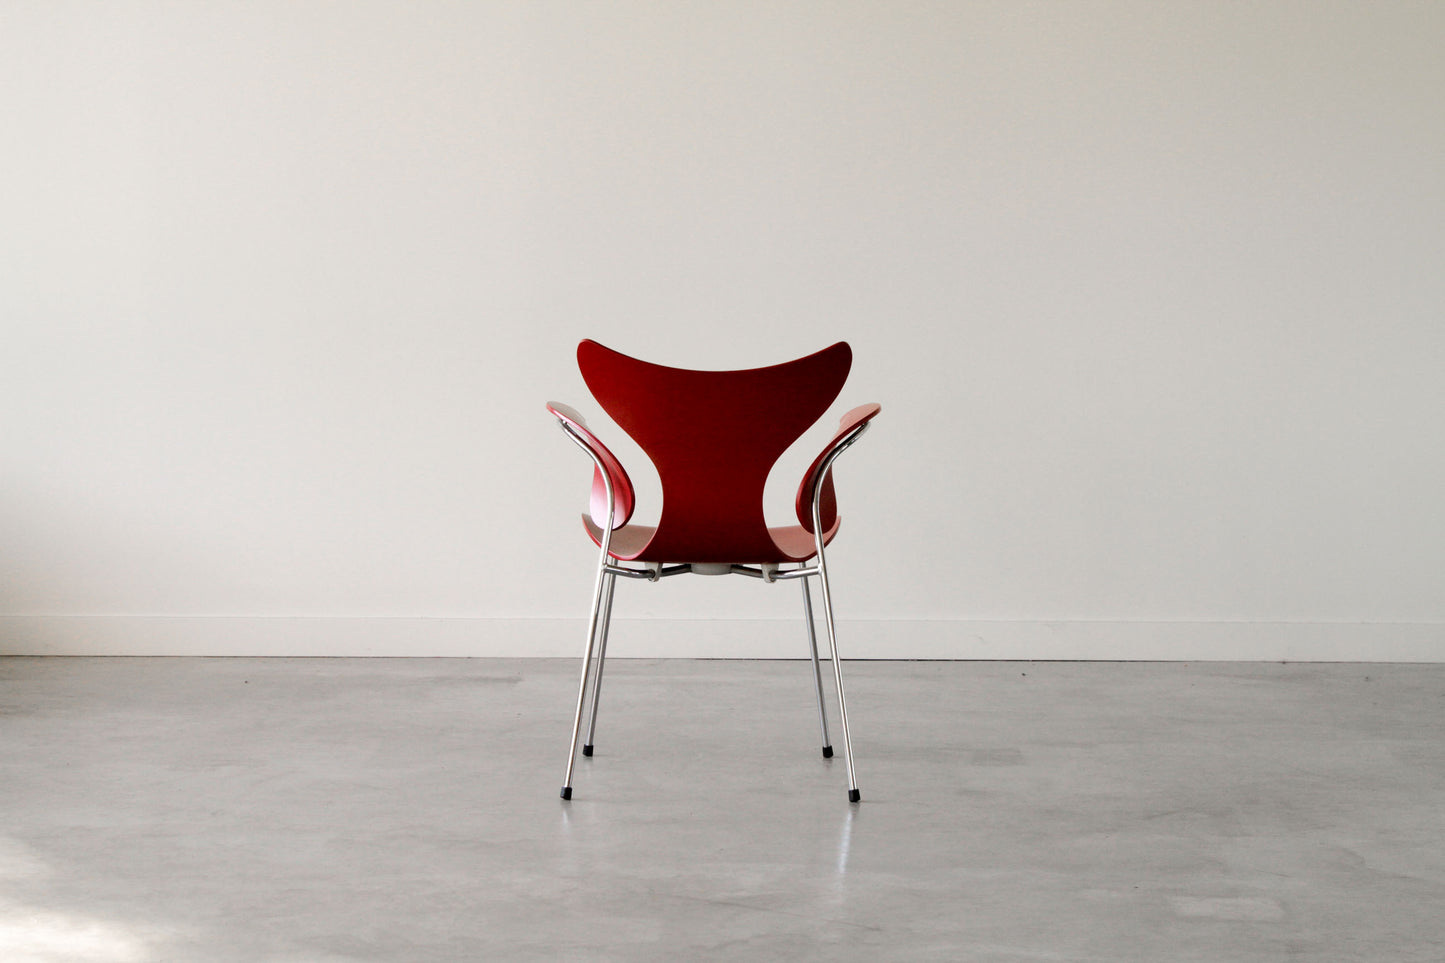 Arne Jacobsen "seagull" chair. In white.